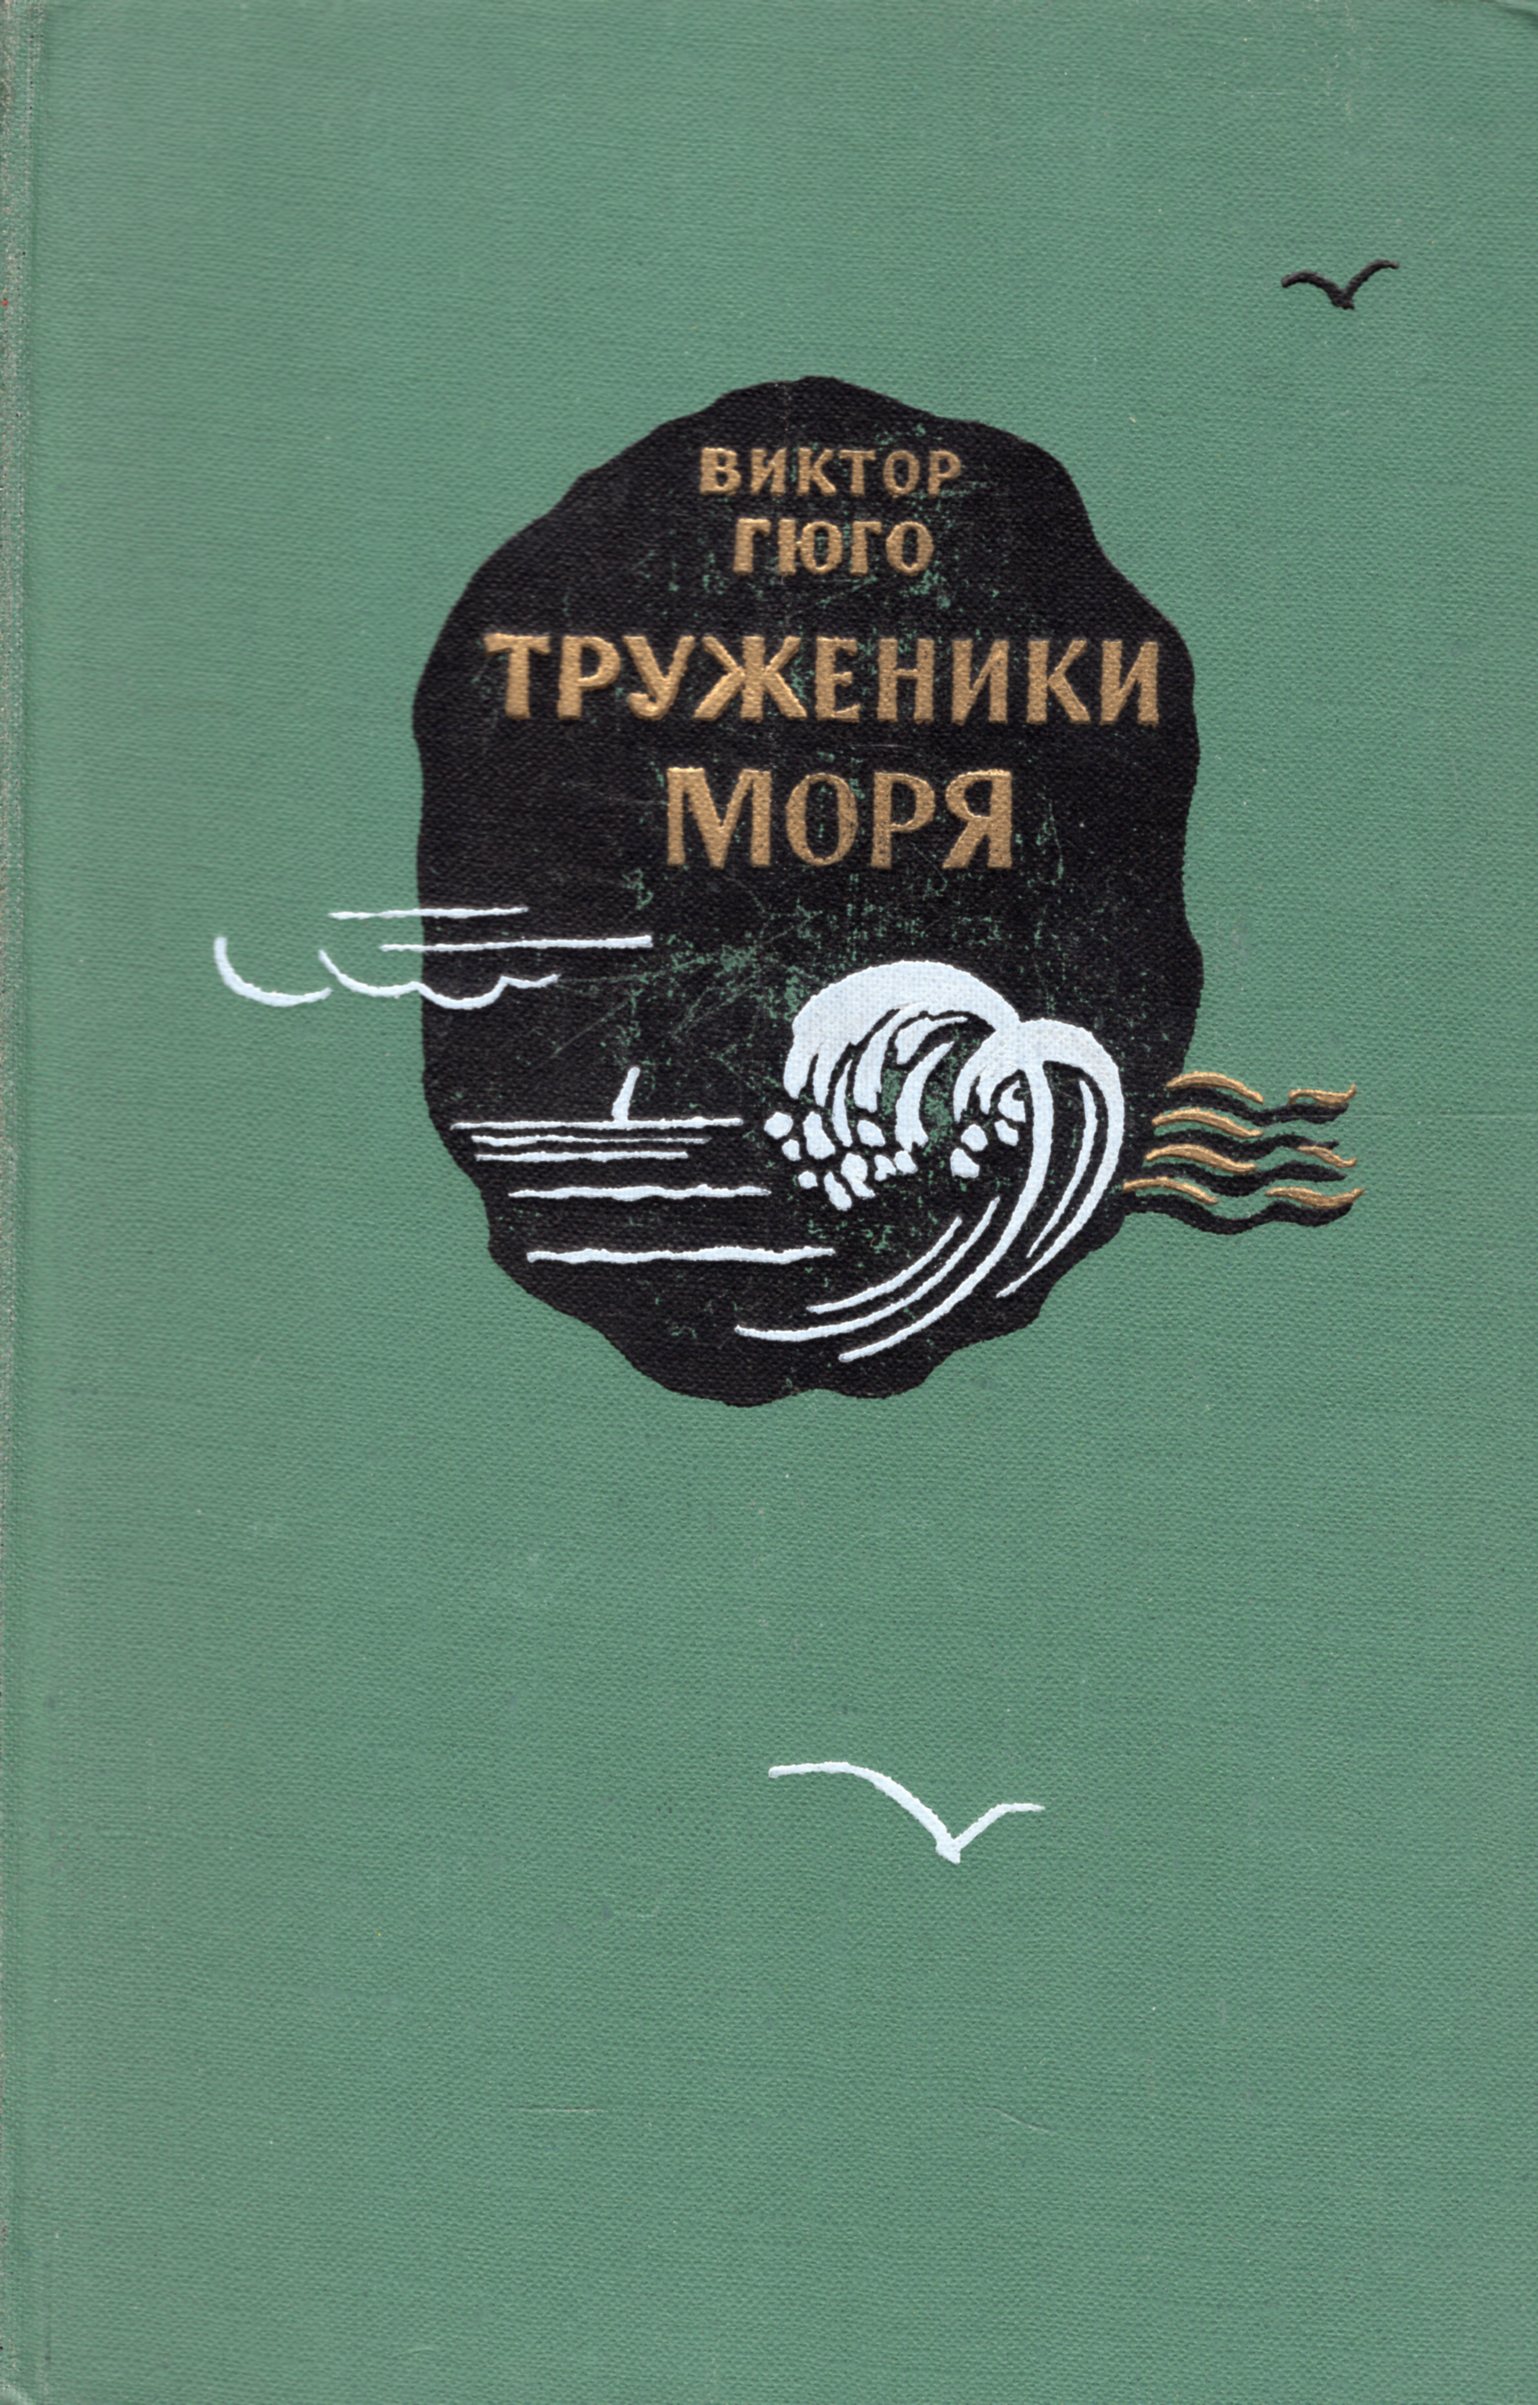 Гюго труженики моря. Гюго в. "труженики моря". Книга труженики моря (Гюго в.). «Труженики моря» (1866).